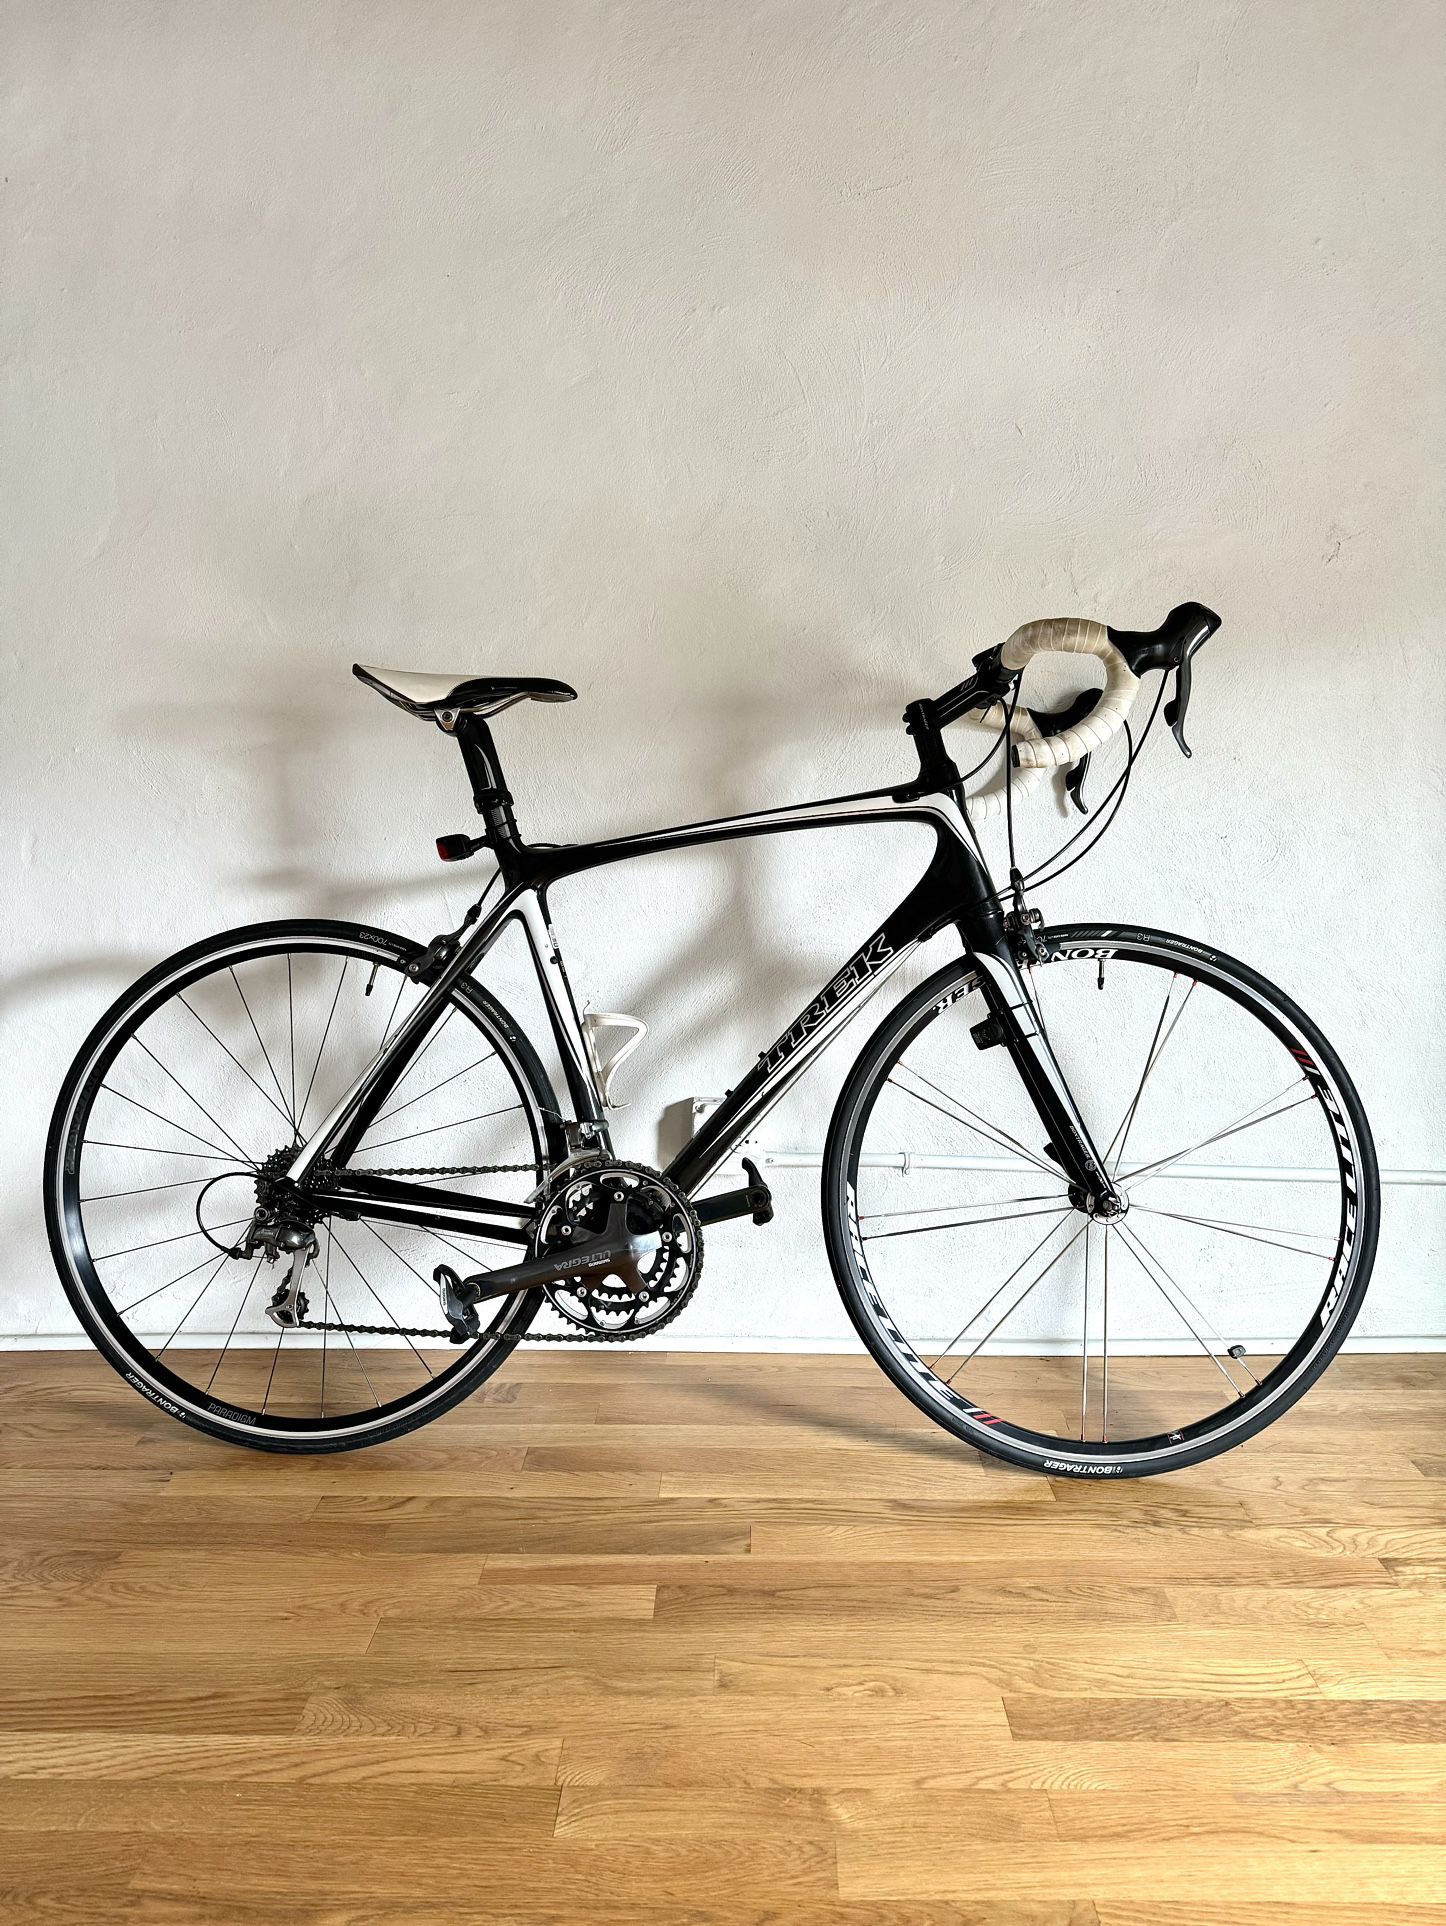 Trek Madone 5.2, Shimano Ultegra, Carbon Fiber Road Bike-2009, 56cm